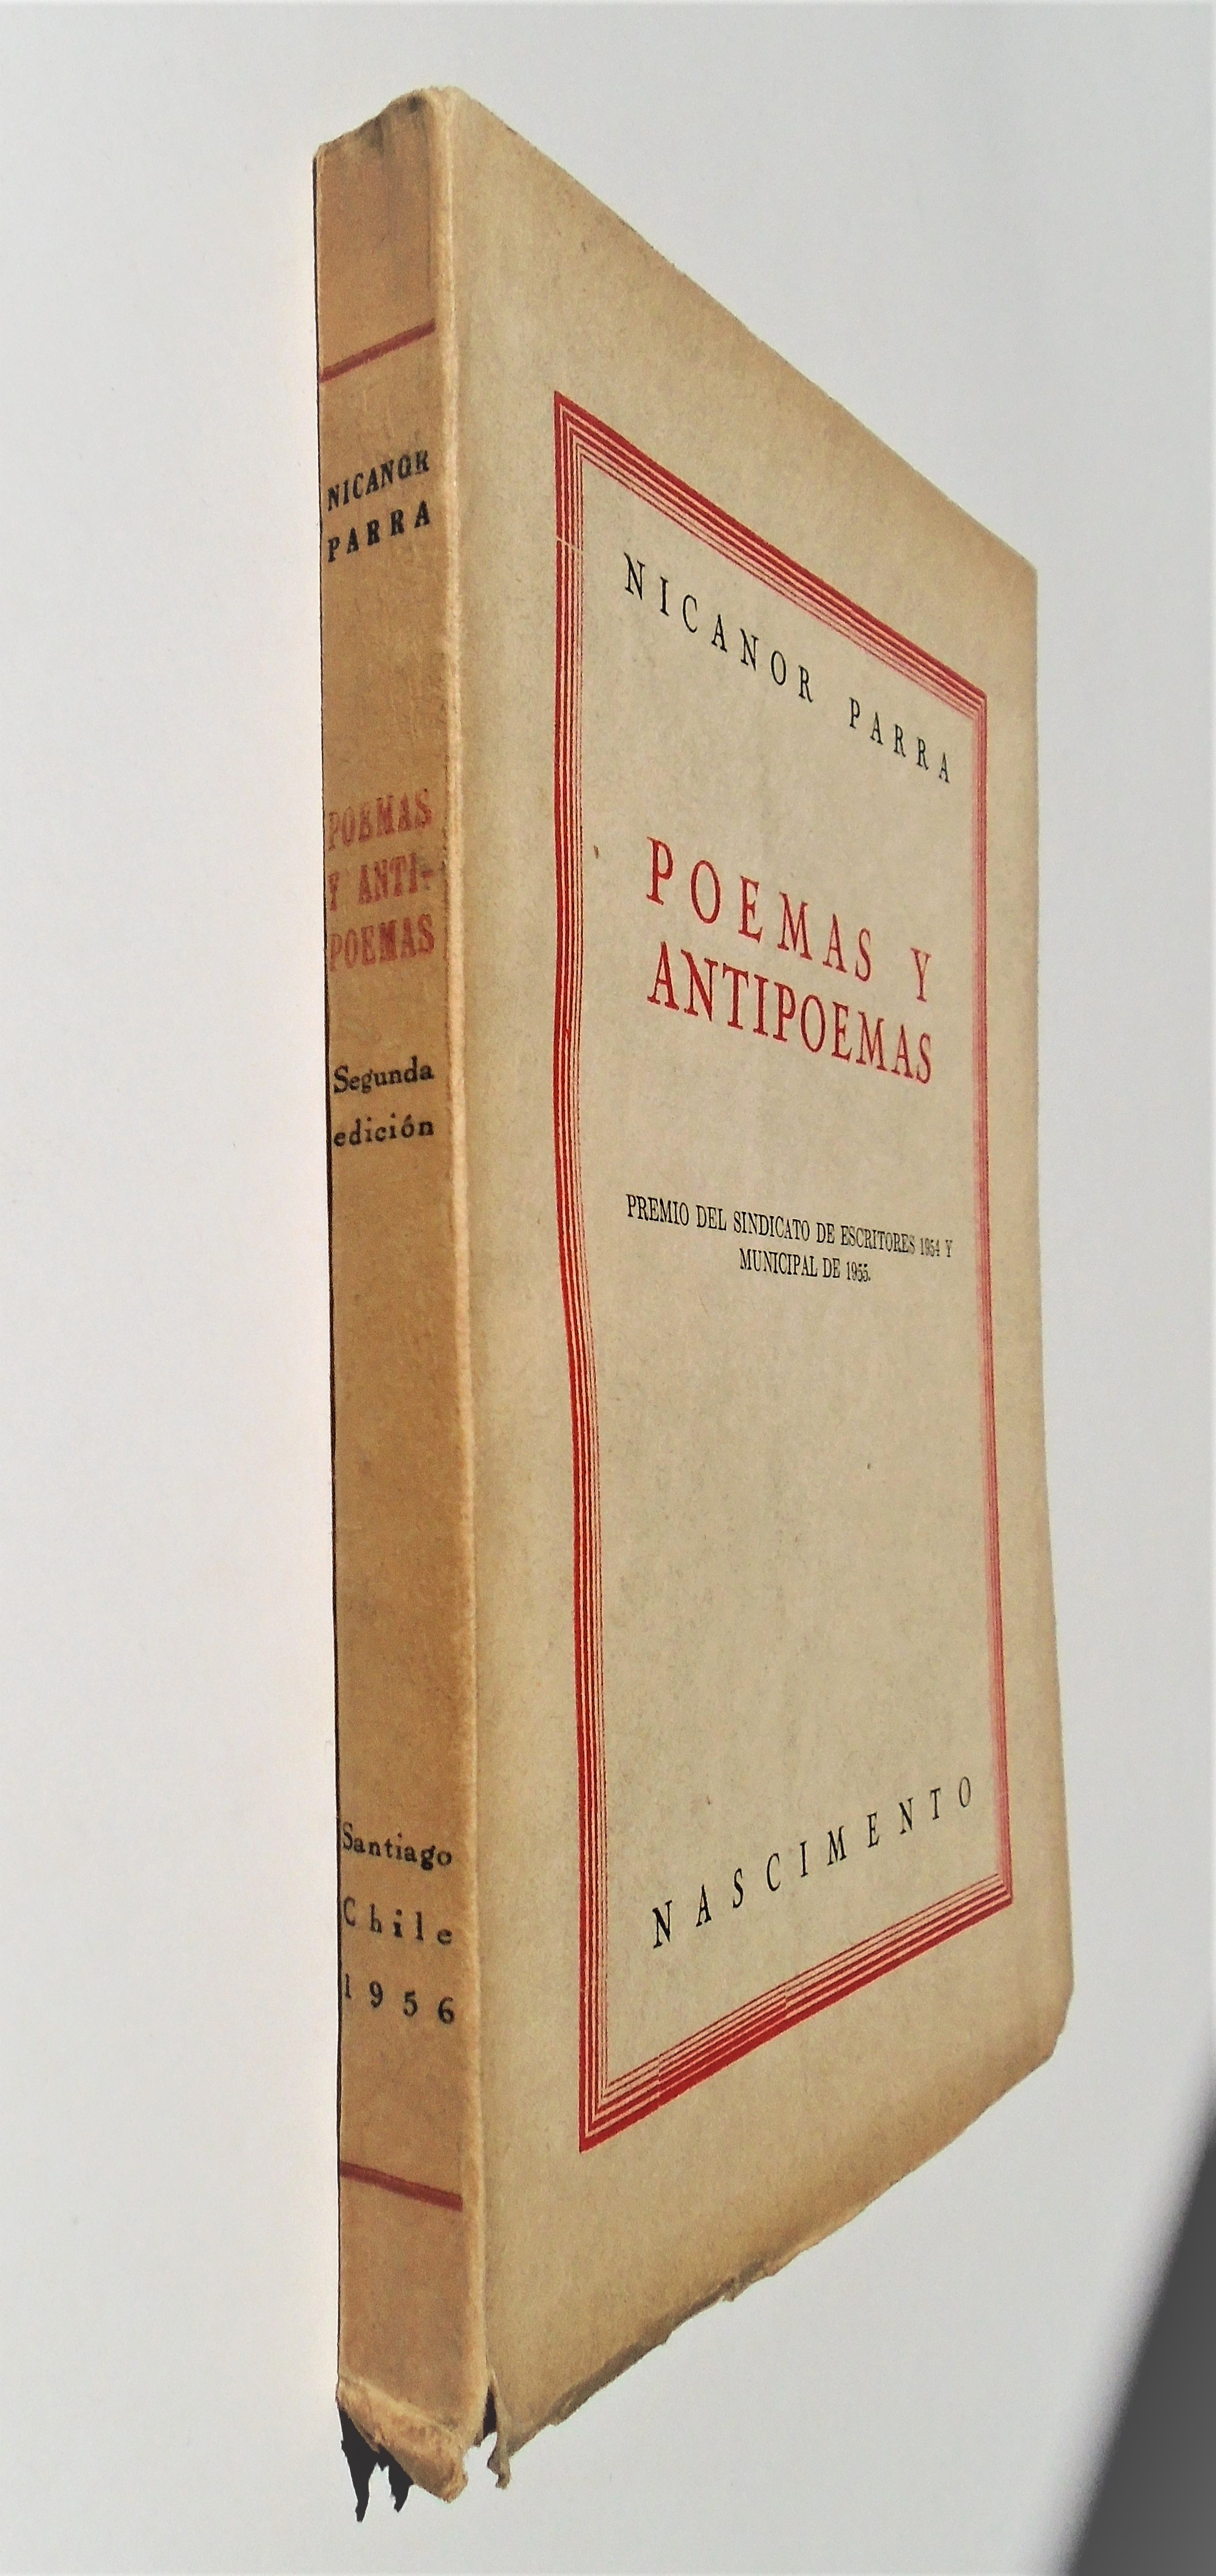 Poemas y antipoemas - Nicanor Parra (1956)